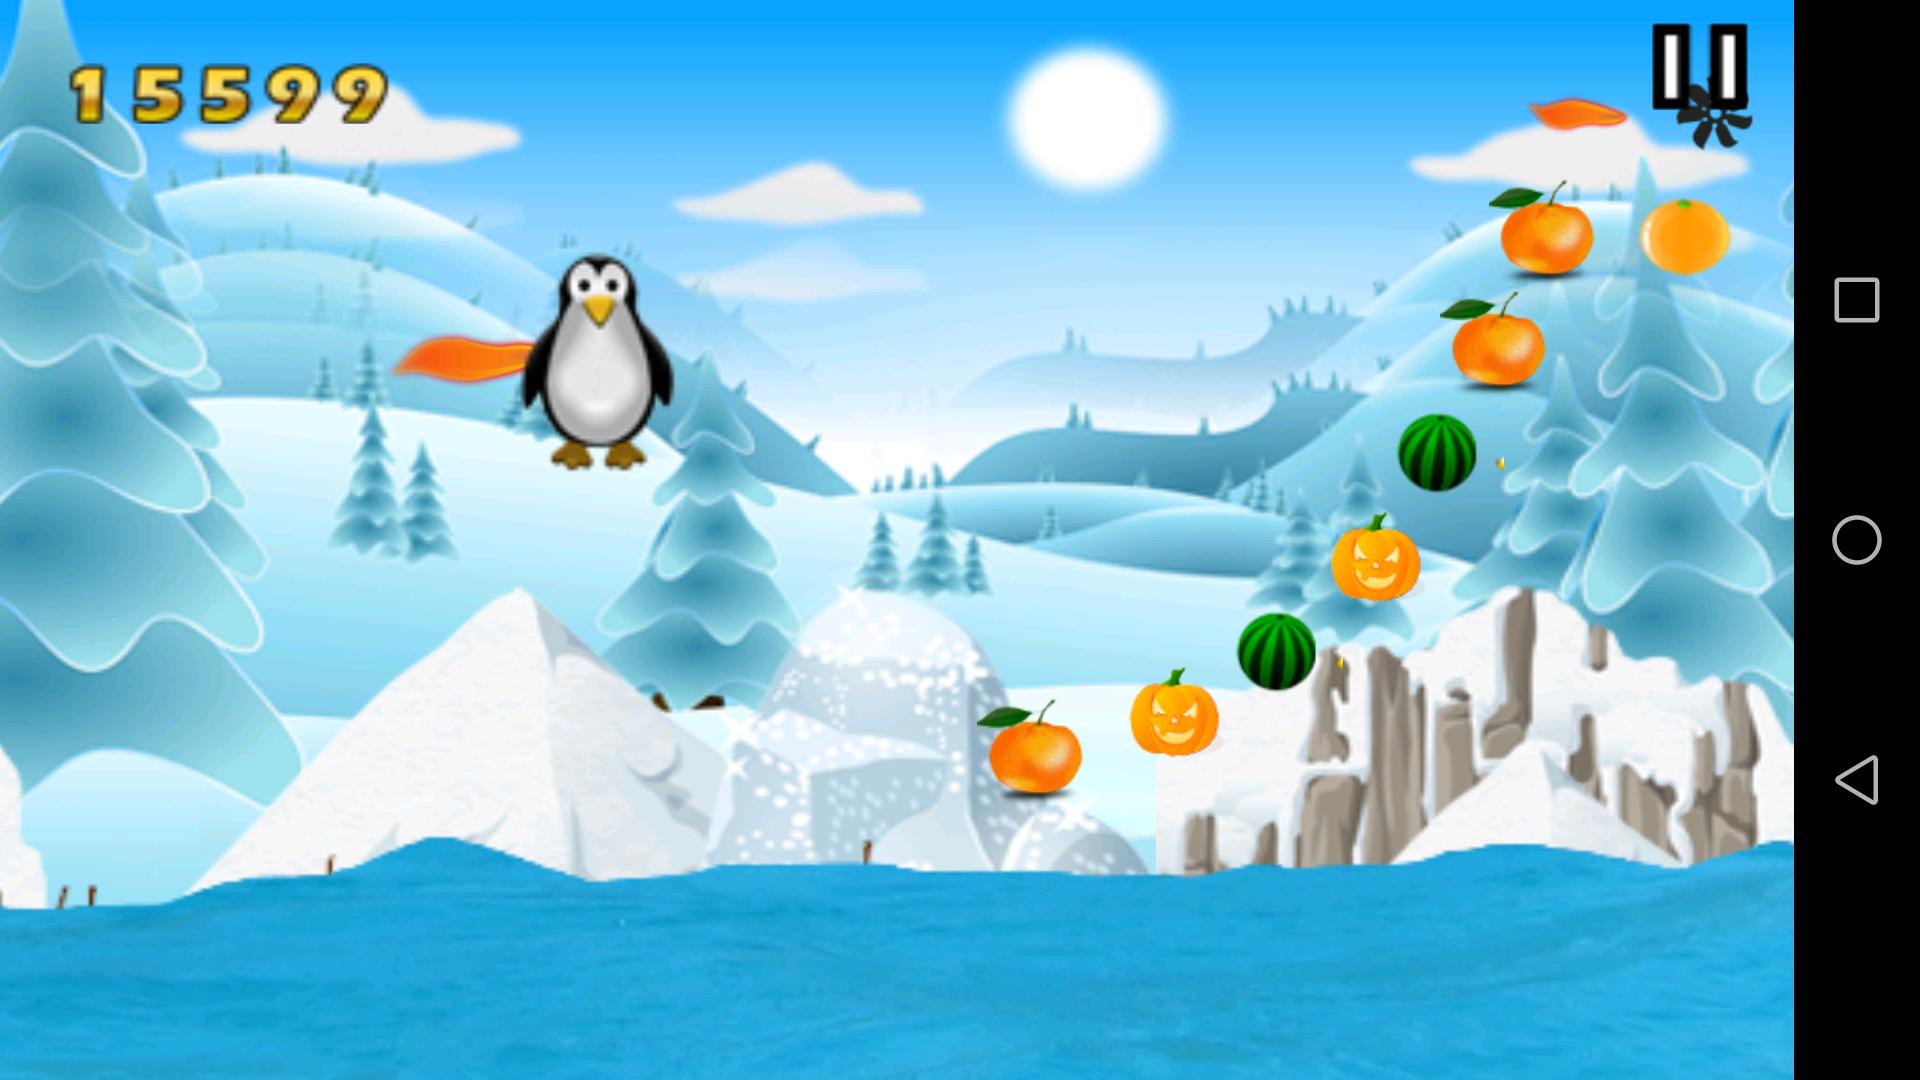 Игра битой бить пингвинов. Пингвин игра виндовс 10. Зимний фон игры Пингвин. Программа для игры Пингвин. Игра Пингвин по льду прыгает и собирает монетки.